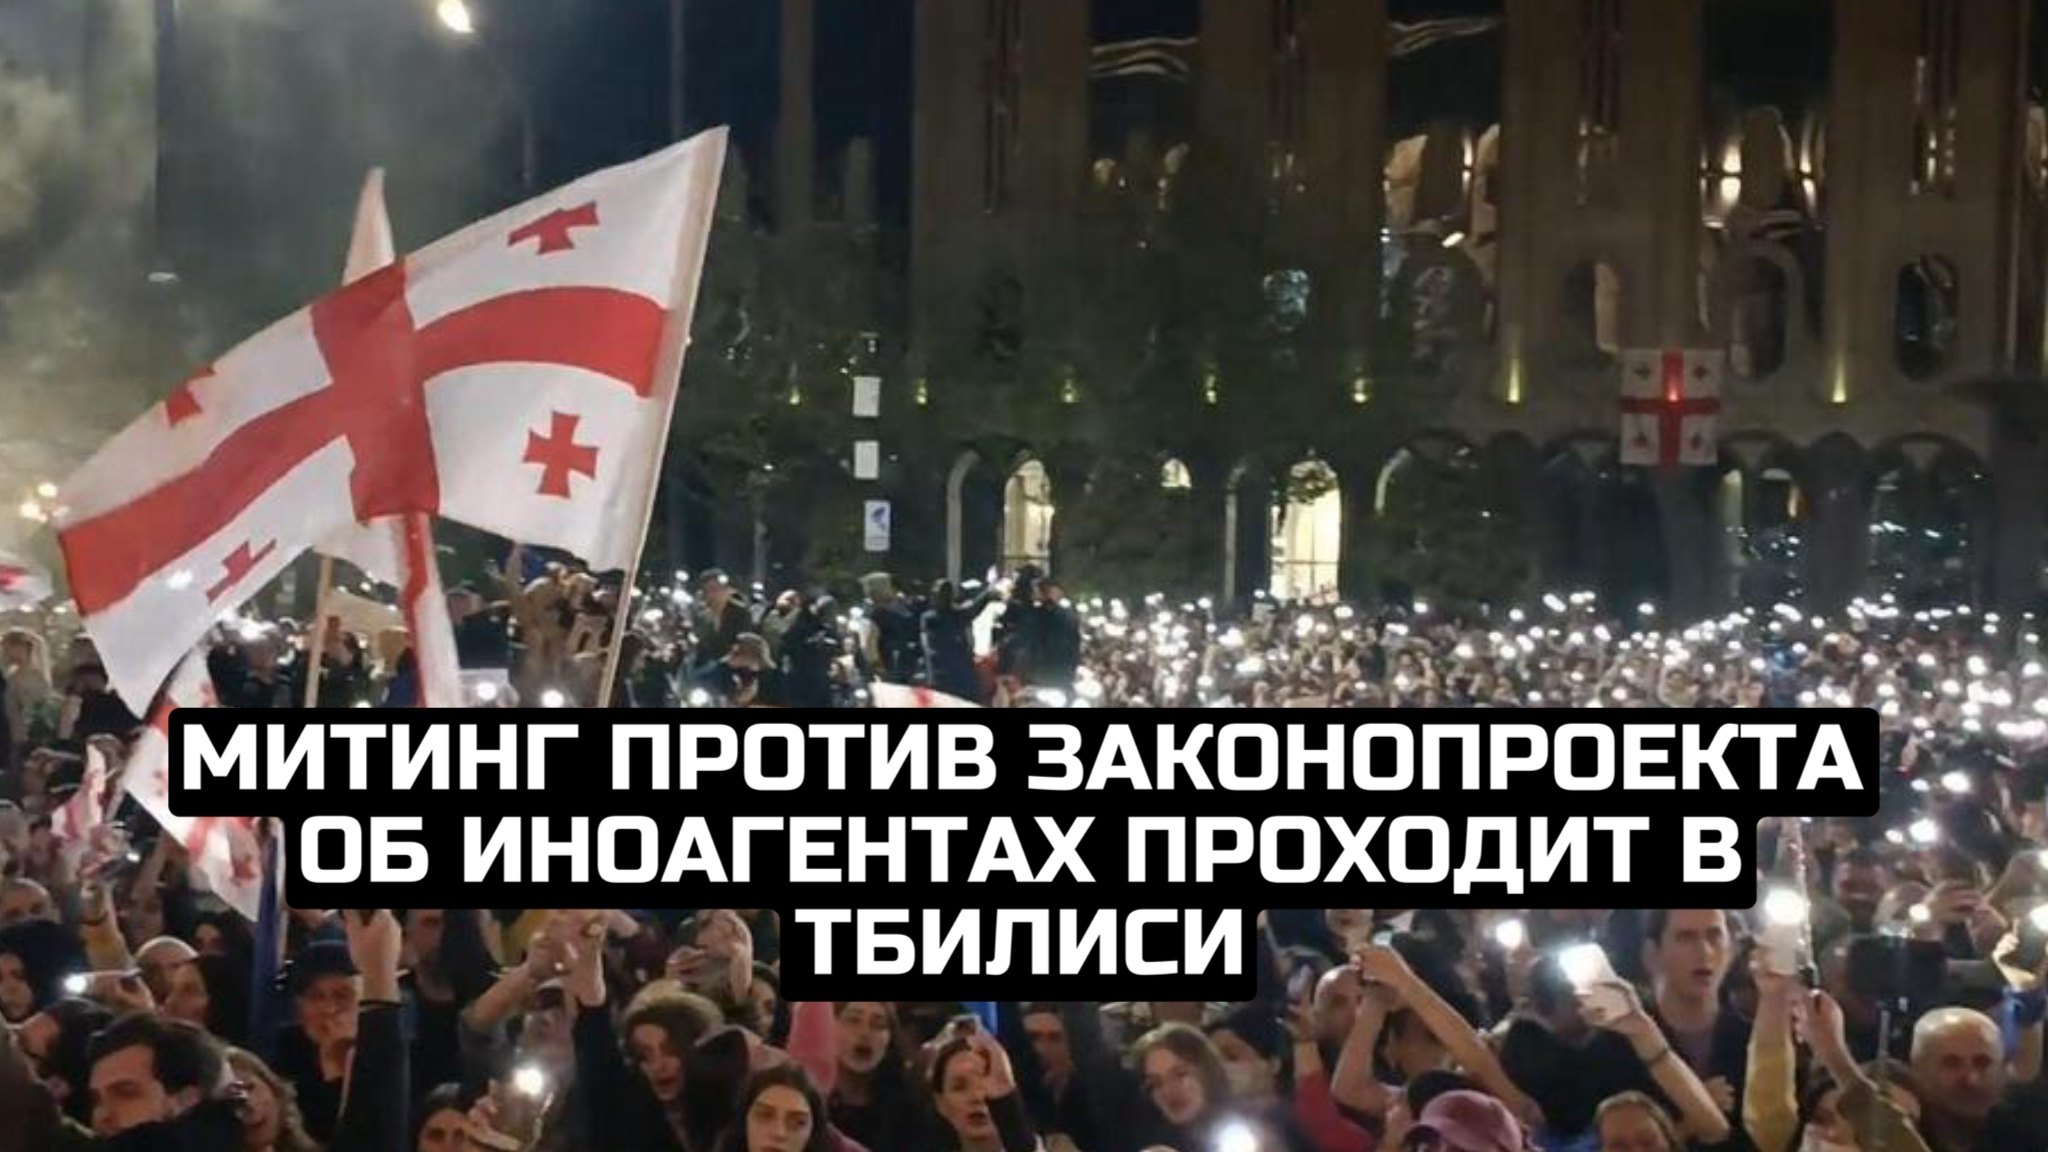 Митинг против законопроекта об иноагентах проходит в Тбилиси